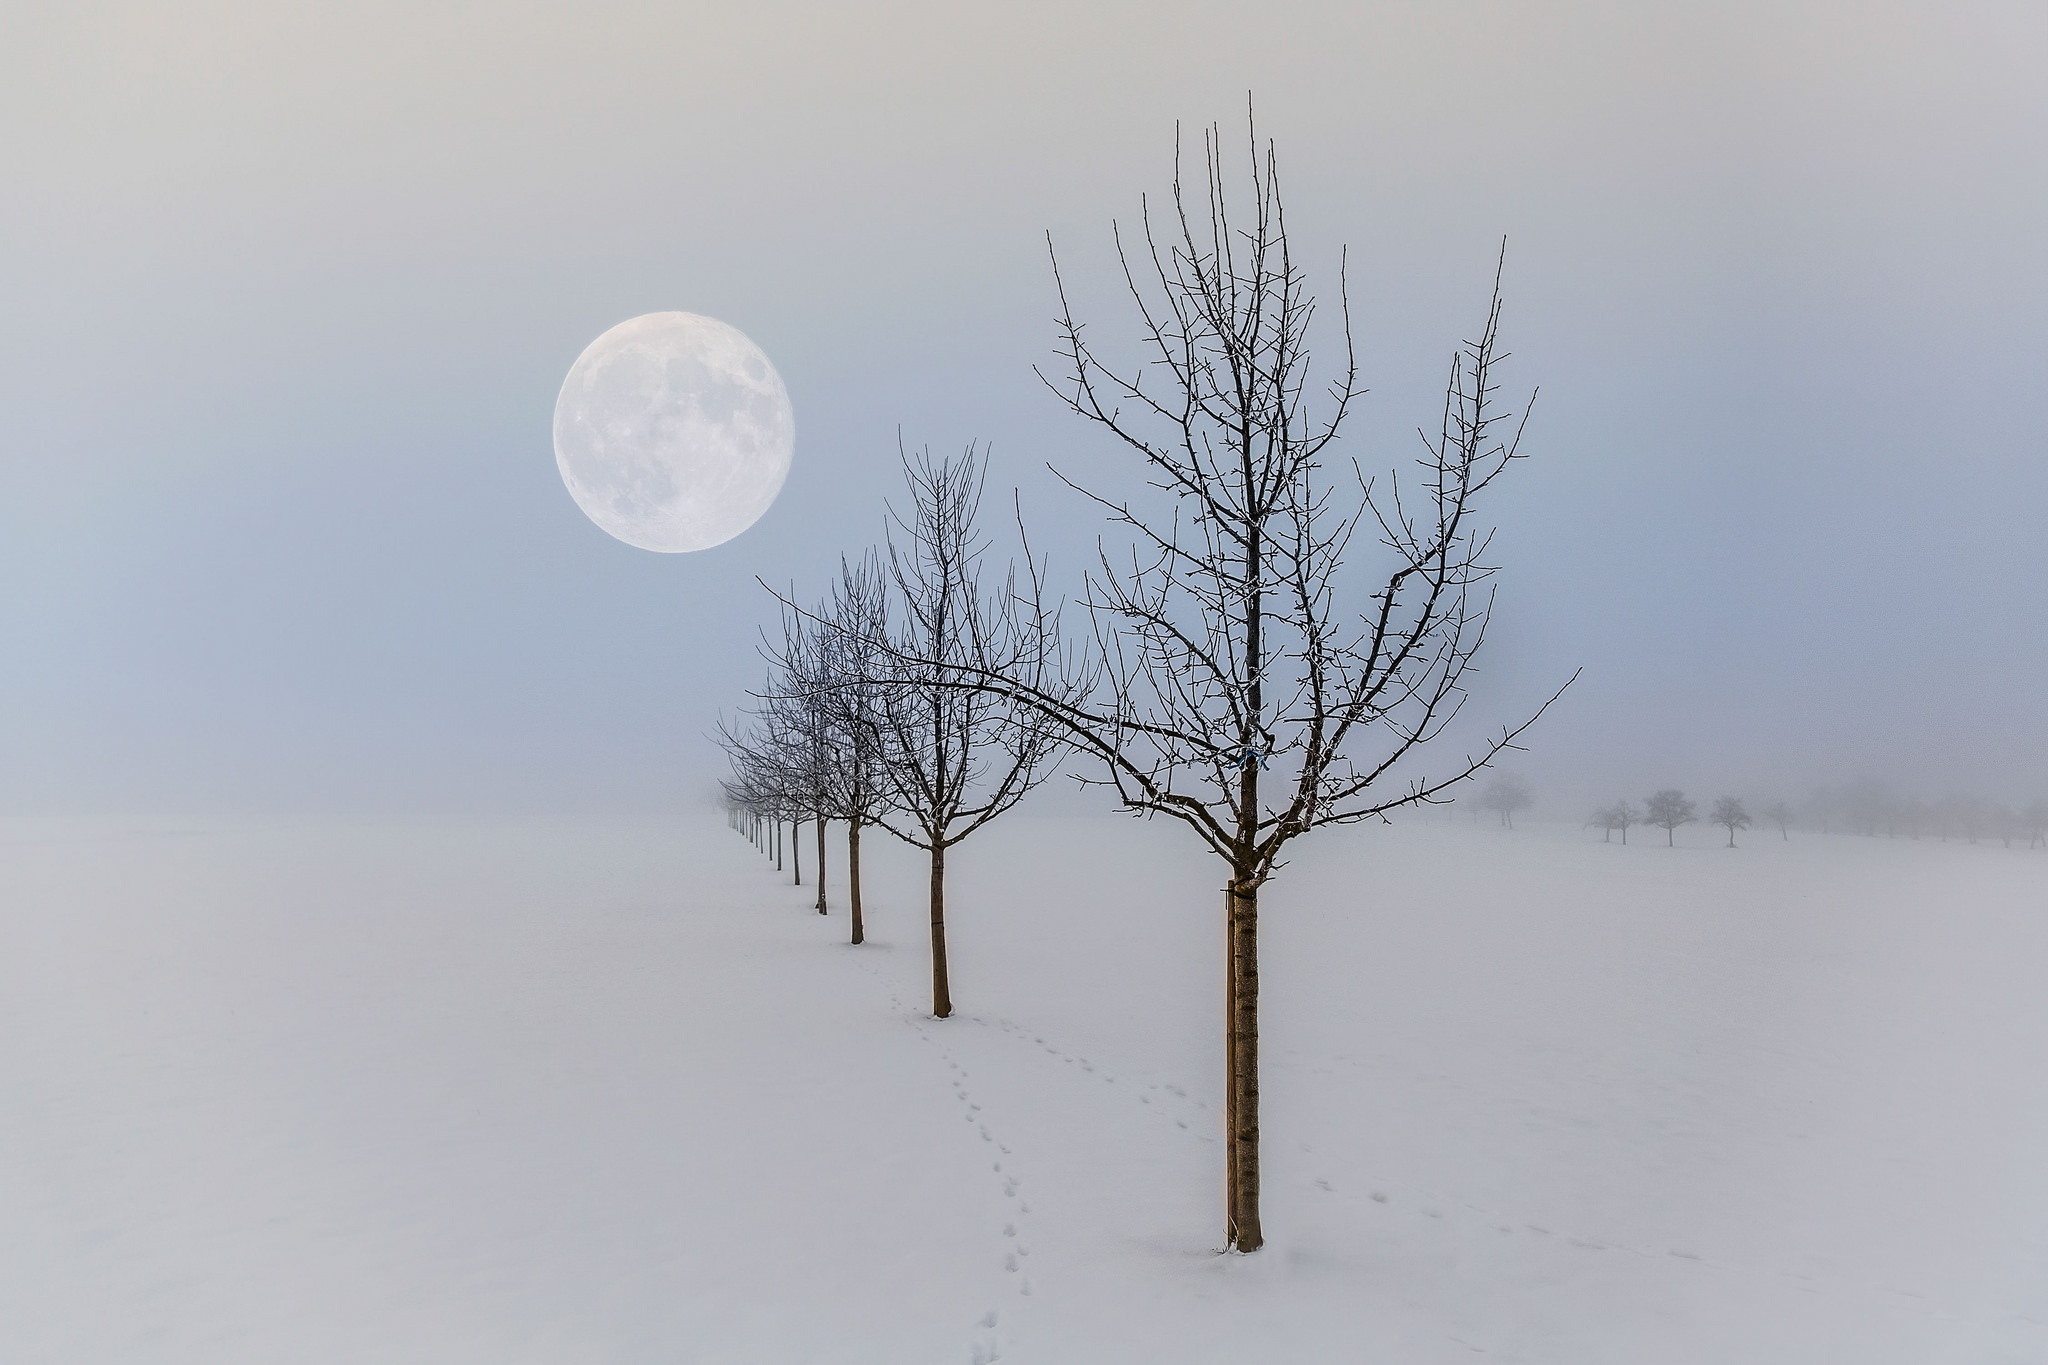 Скачать обои бесплатно Зима, Луна, Снег, Дерево, Туман, Земля/природа картинка на рабочий стол ПК